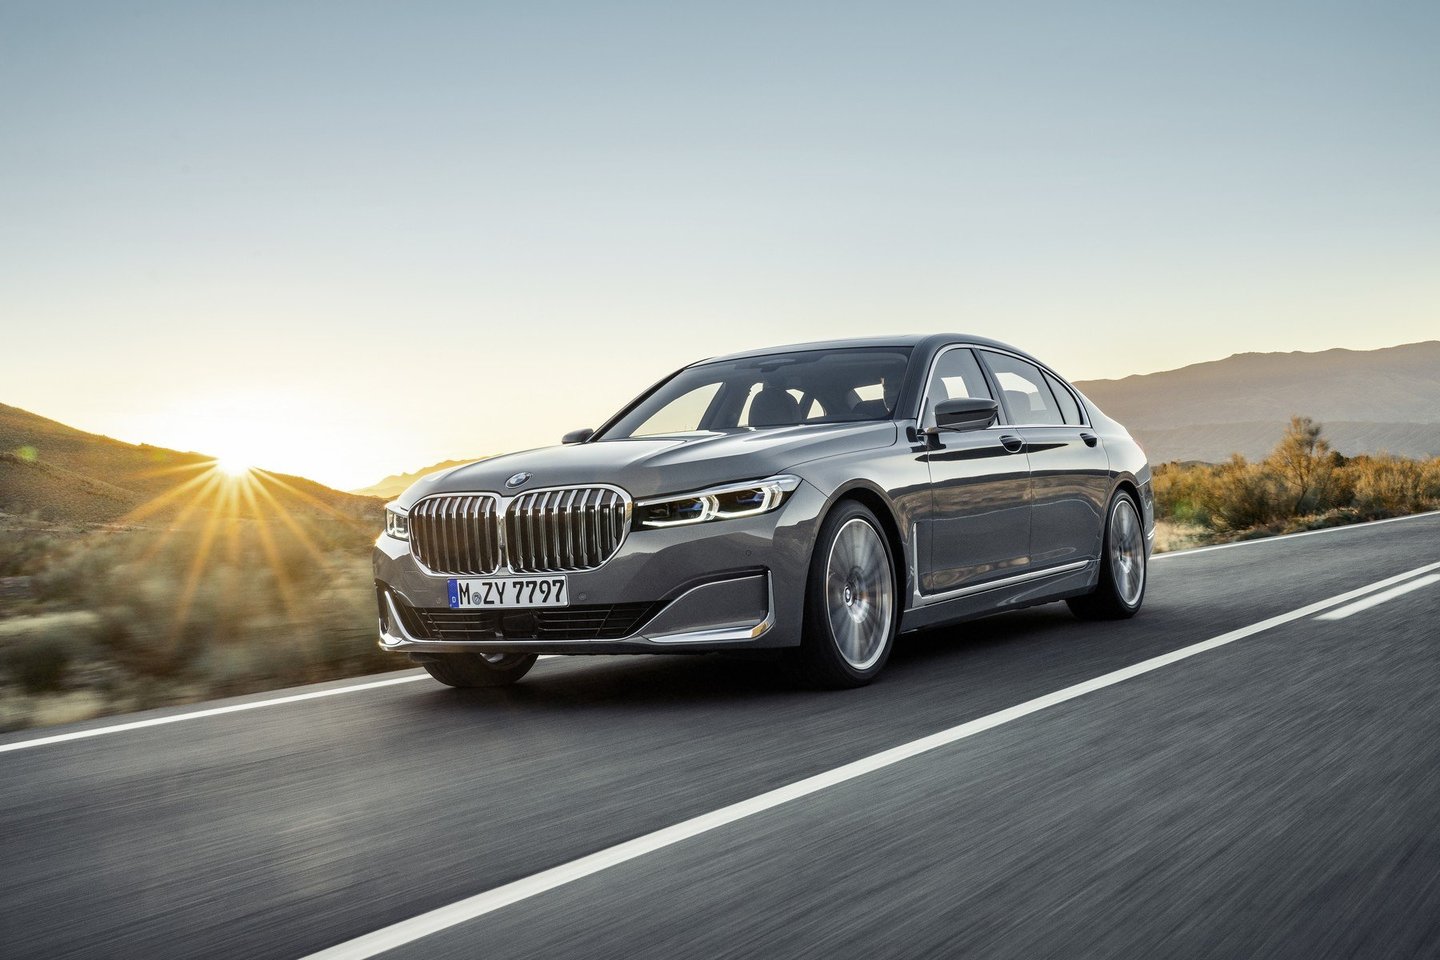  BMW pristatė atnaujintą 7 serijos modelį.<br> Gamintojo nuotr.